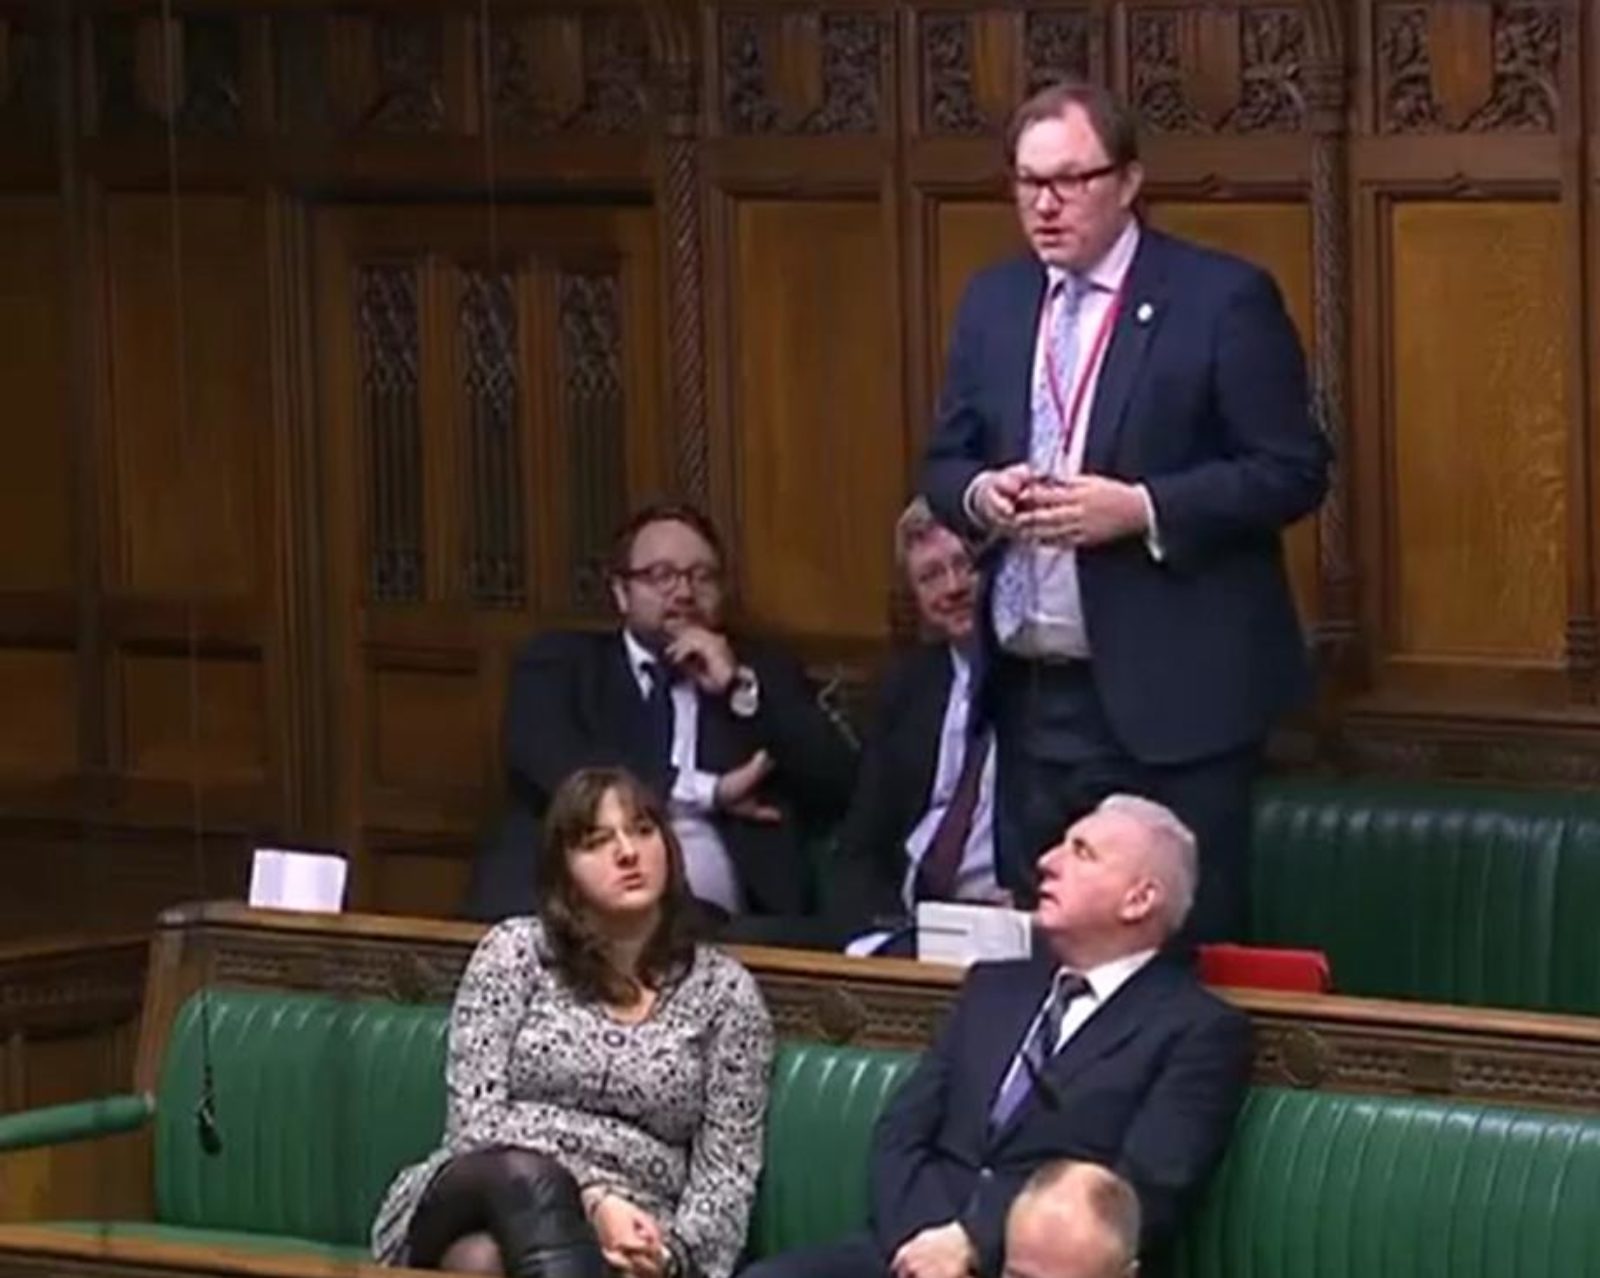 Gareth speaking in Parliament